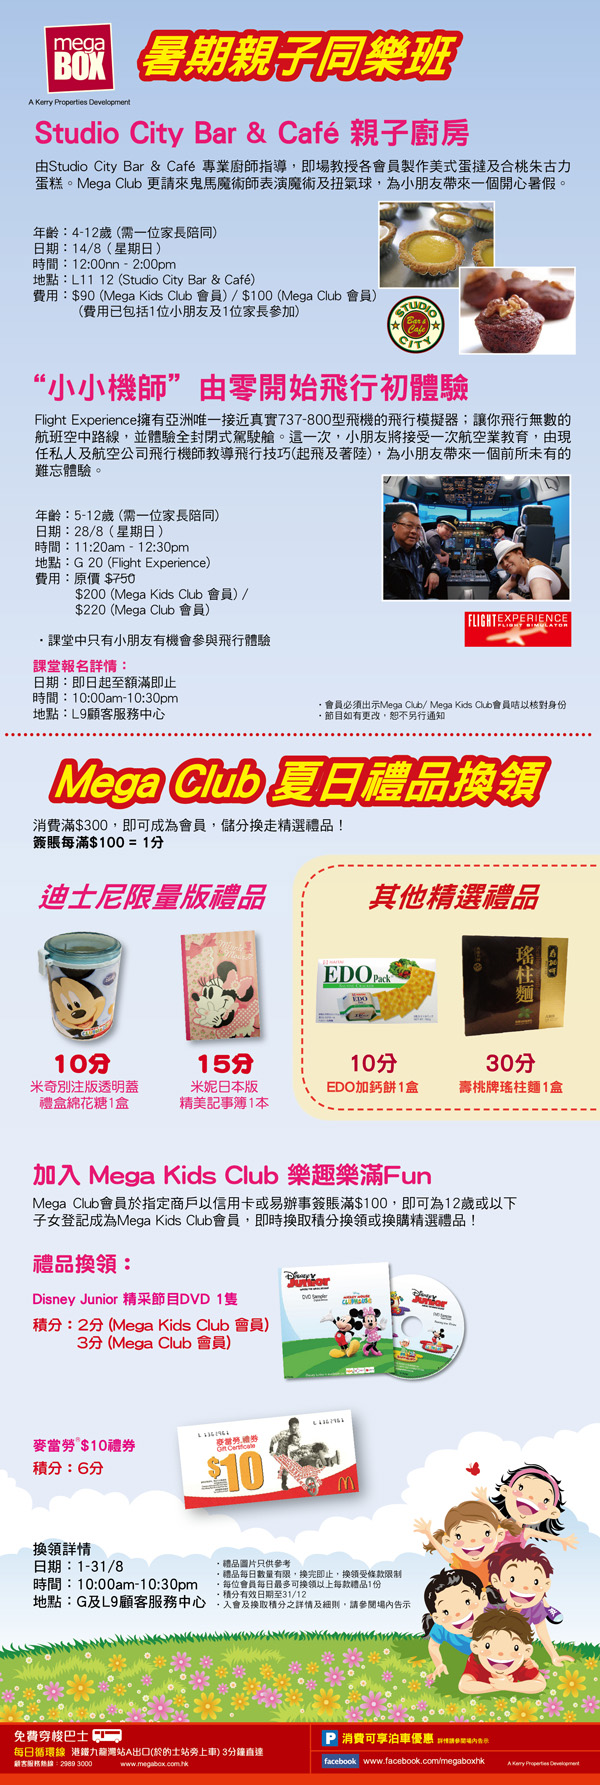 Mega Club 1.4 i